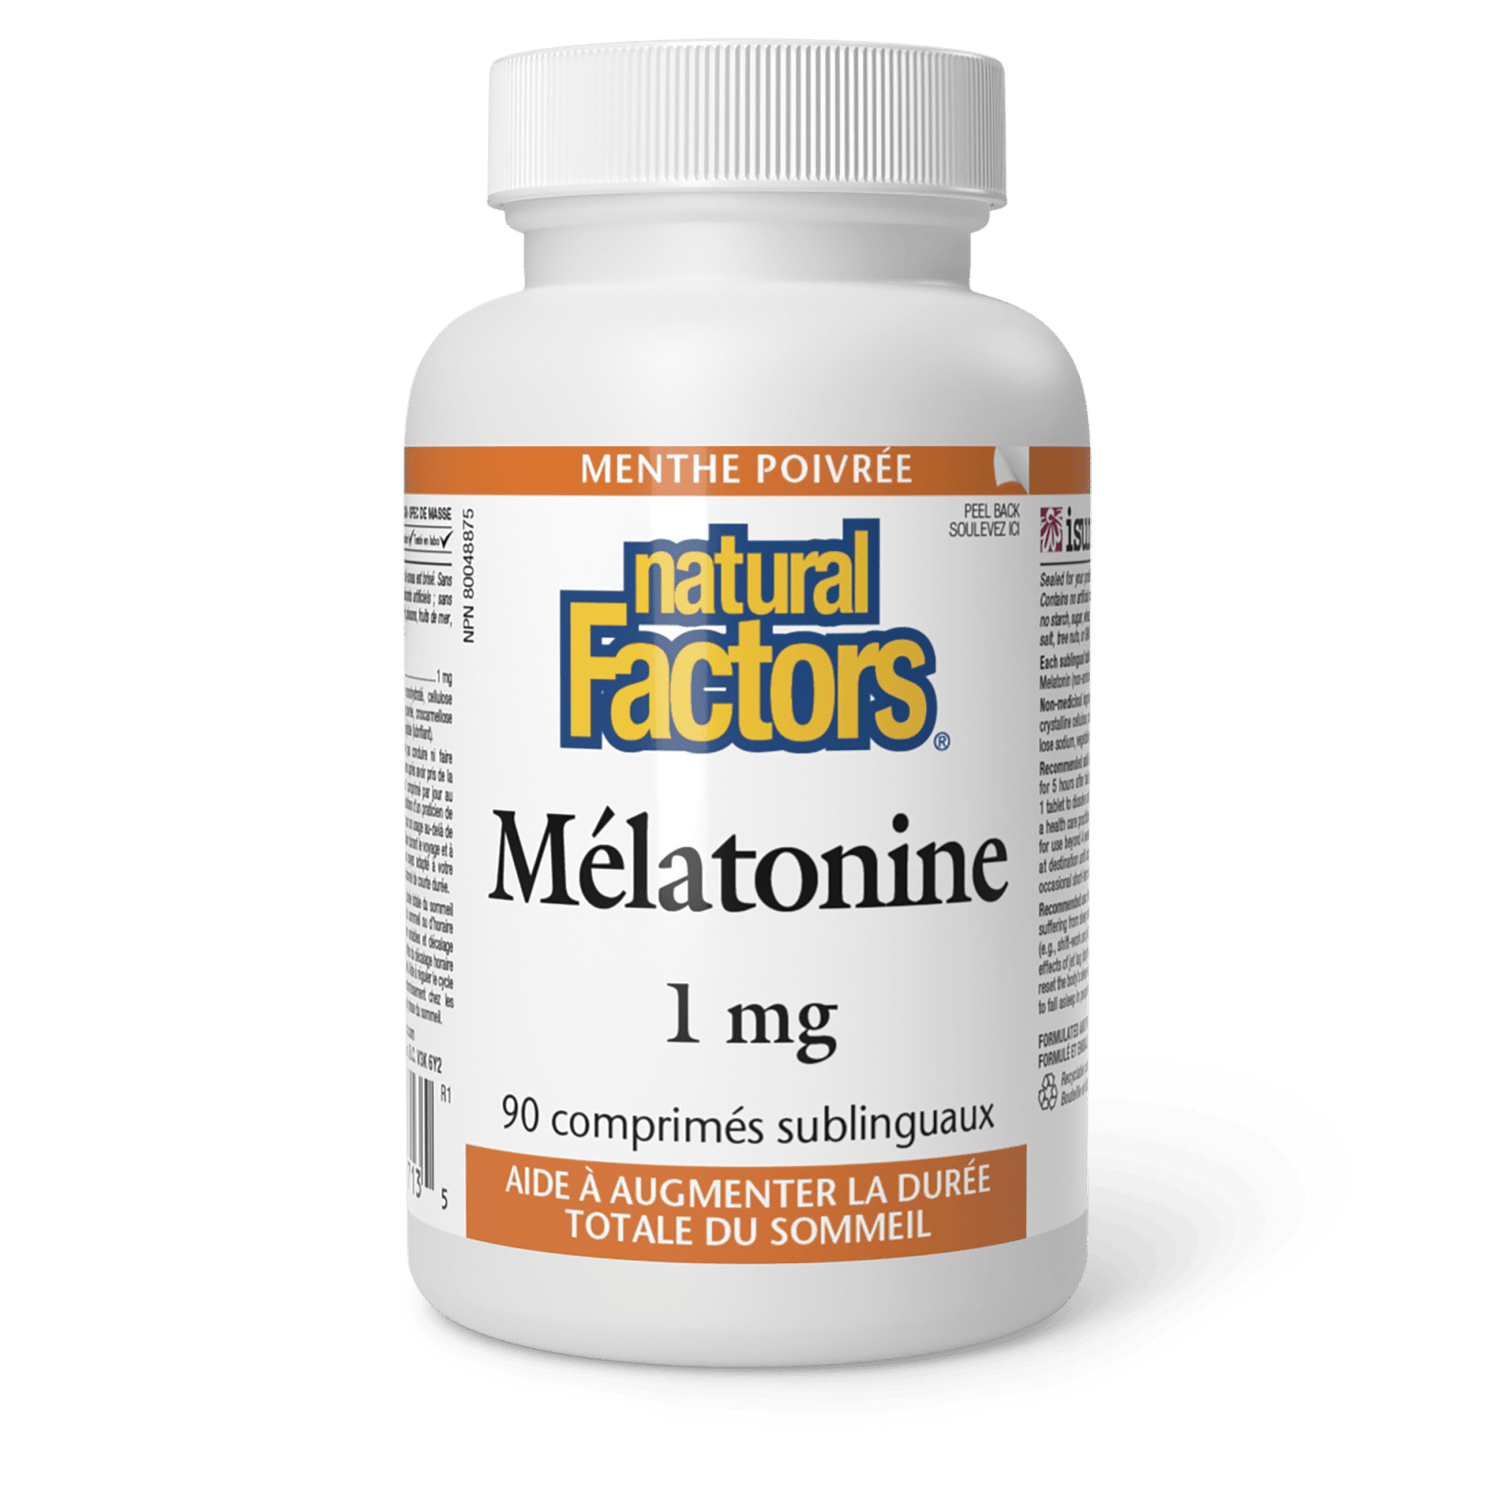 Mélatonine 1 mg, menthe poivrée, Natural Factors|v|image|2713